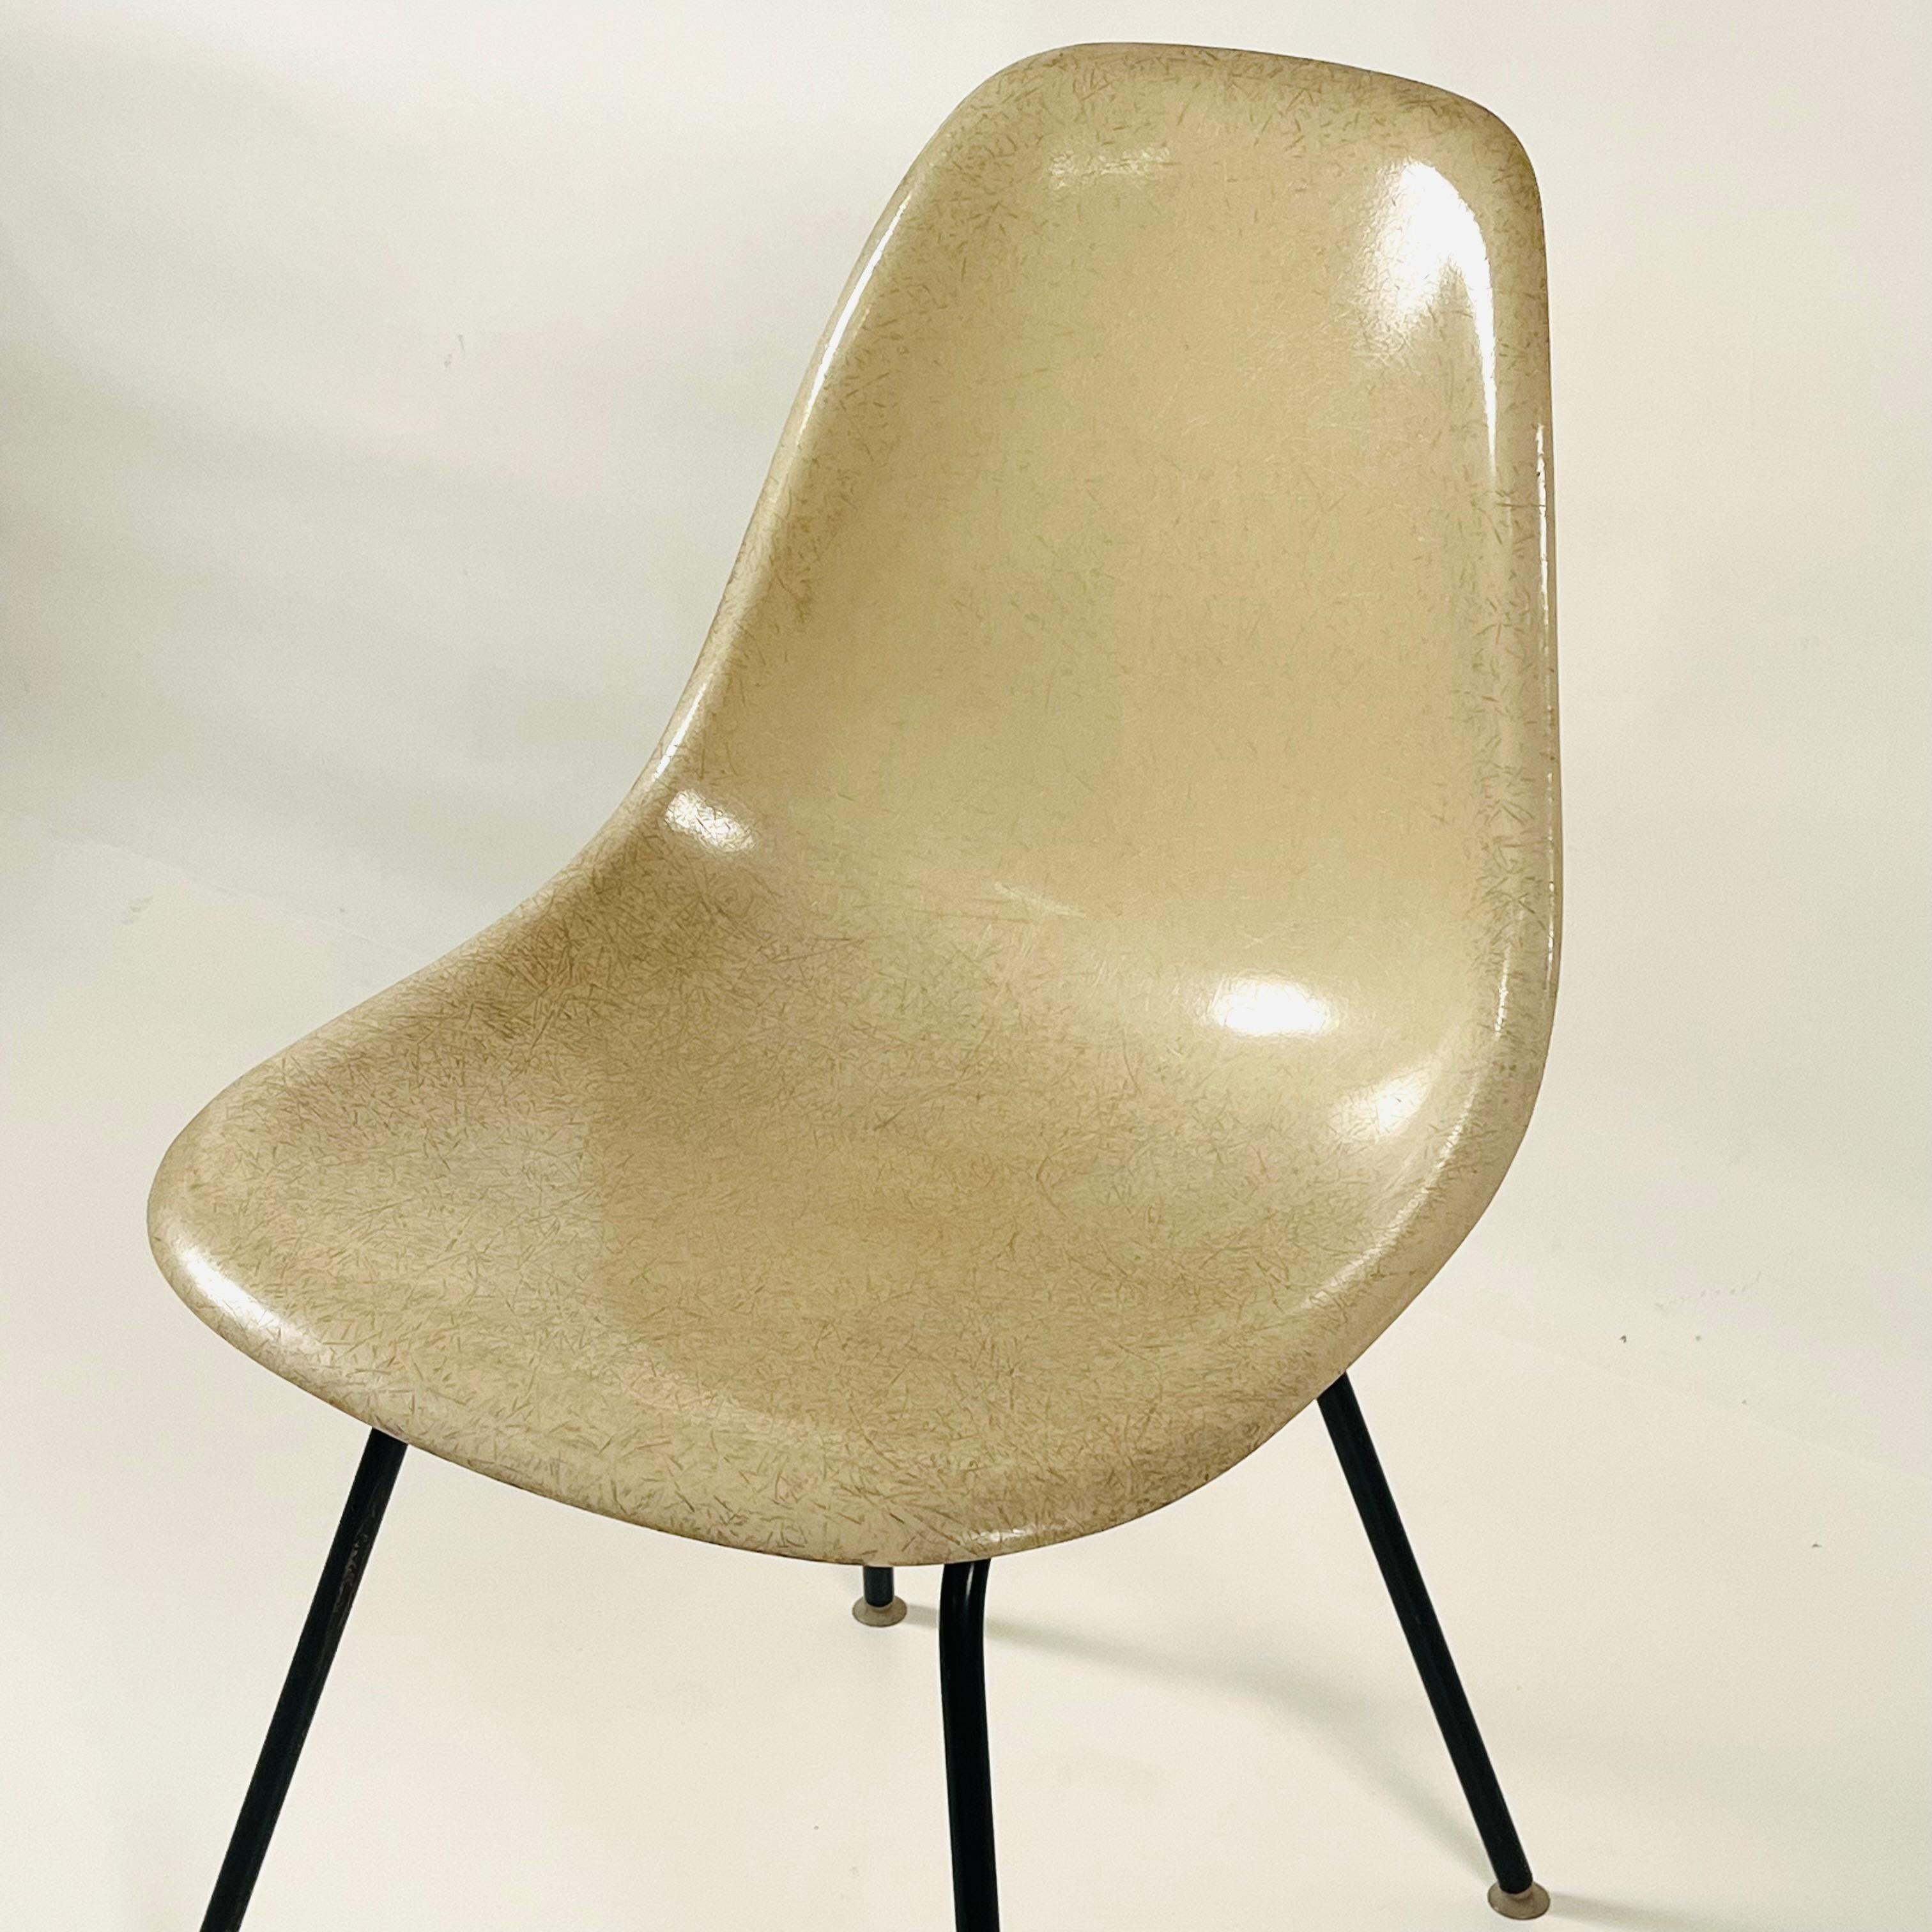 Satz von 4 weißen Eames-Stühlen aus Fiberglas von Herman Miller. Alles original, keine Neuauflage. Abgestempelt unter.